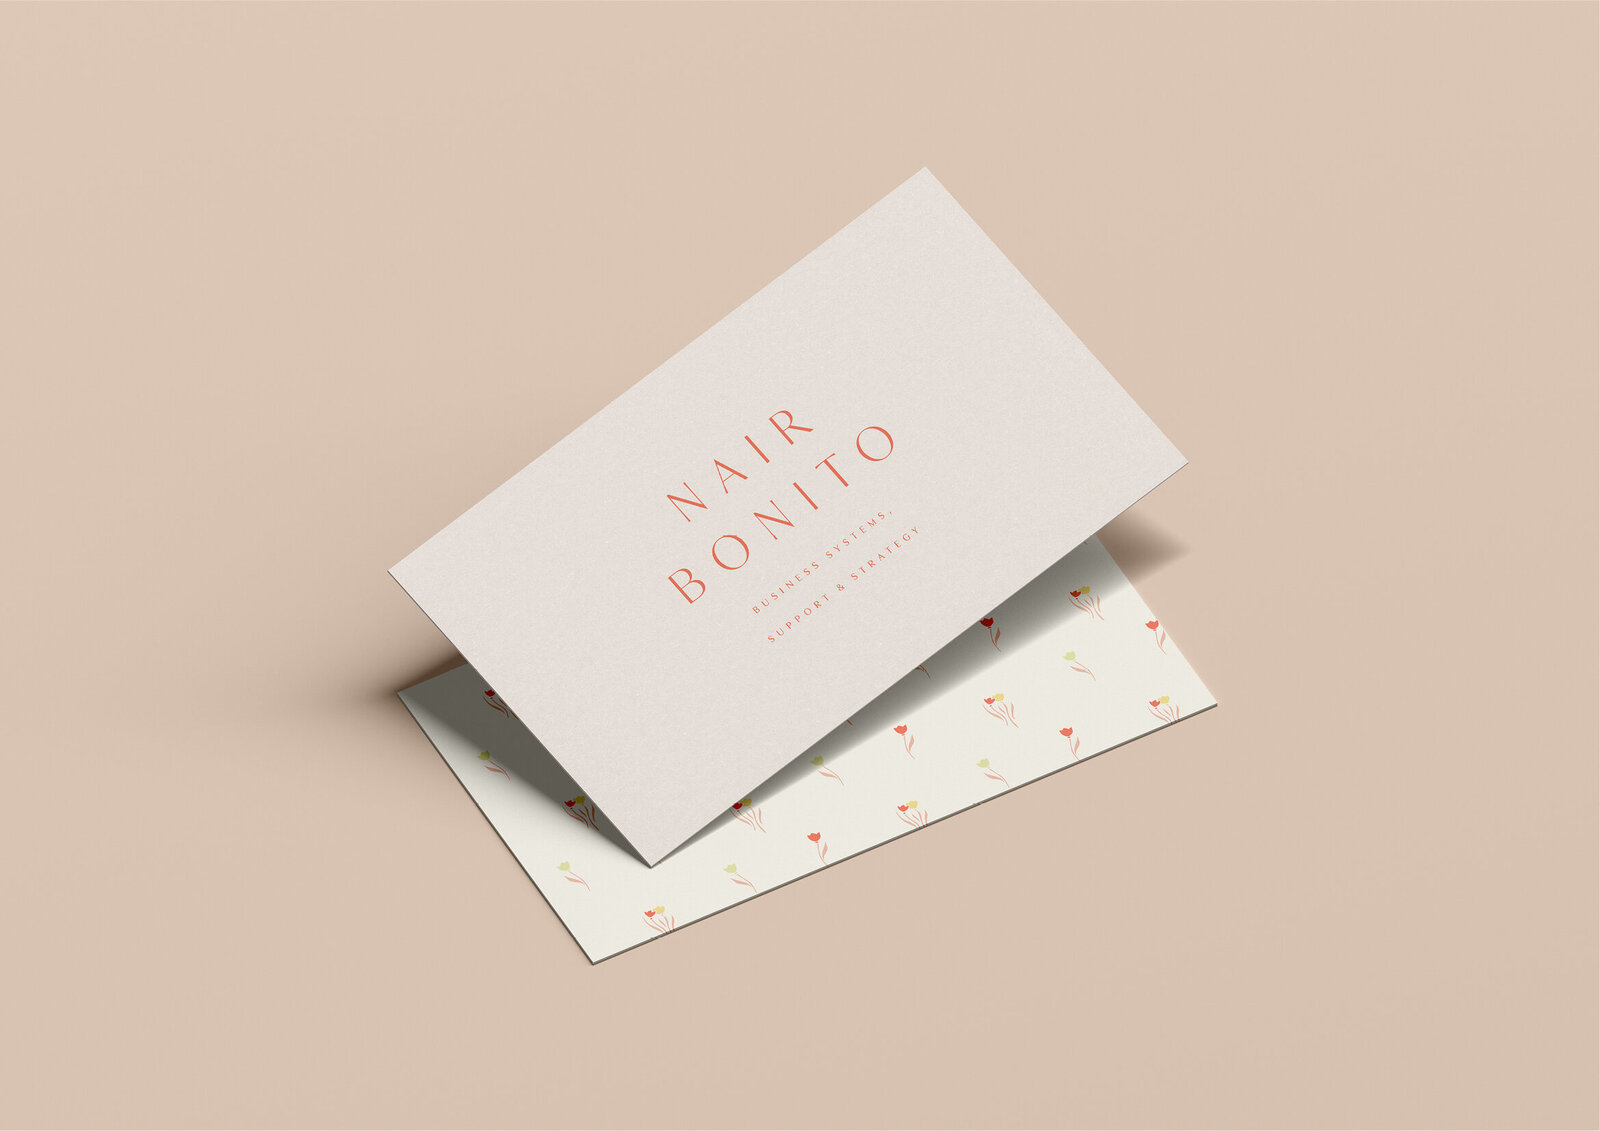 Nair Bonito - Brand Design19